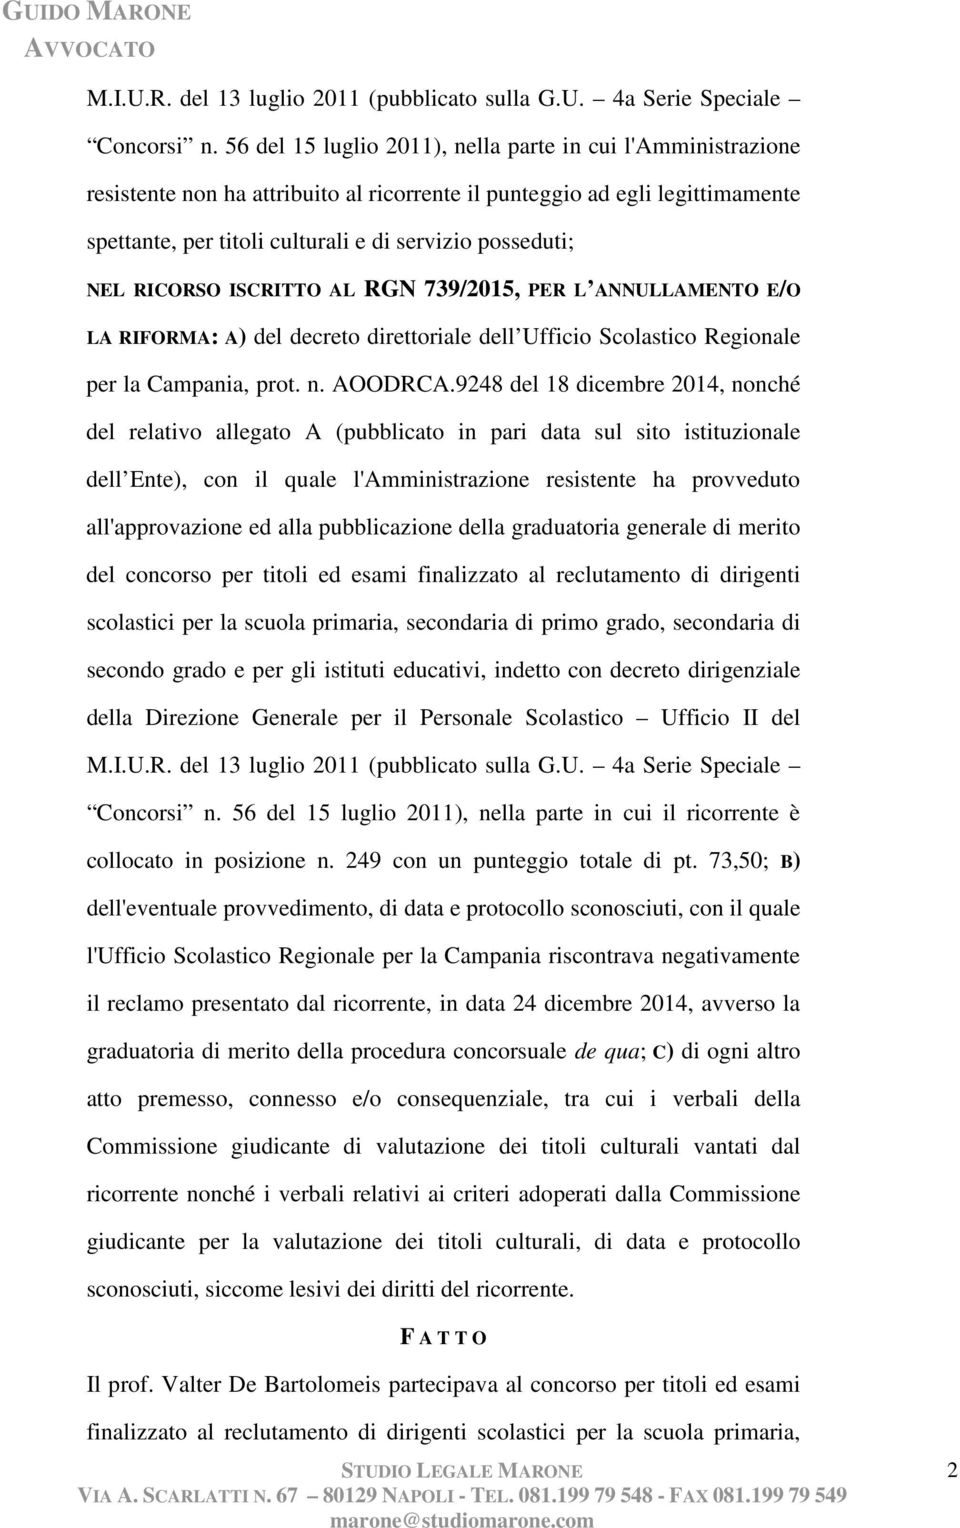 NEL RICORSO ISCRITTO AL RGN 739/2015, PER L ANNULLAMENTO E/O LA RIFORMA: A) del decreto direttoriale dell Ufficio Scolastico Regionale per la Campania, prot. n. AOODRCA.